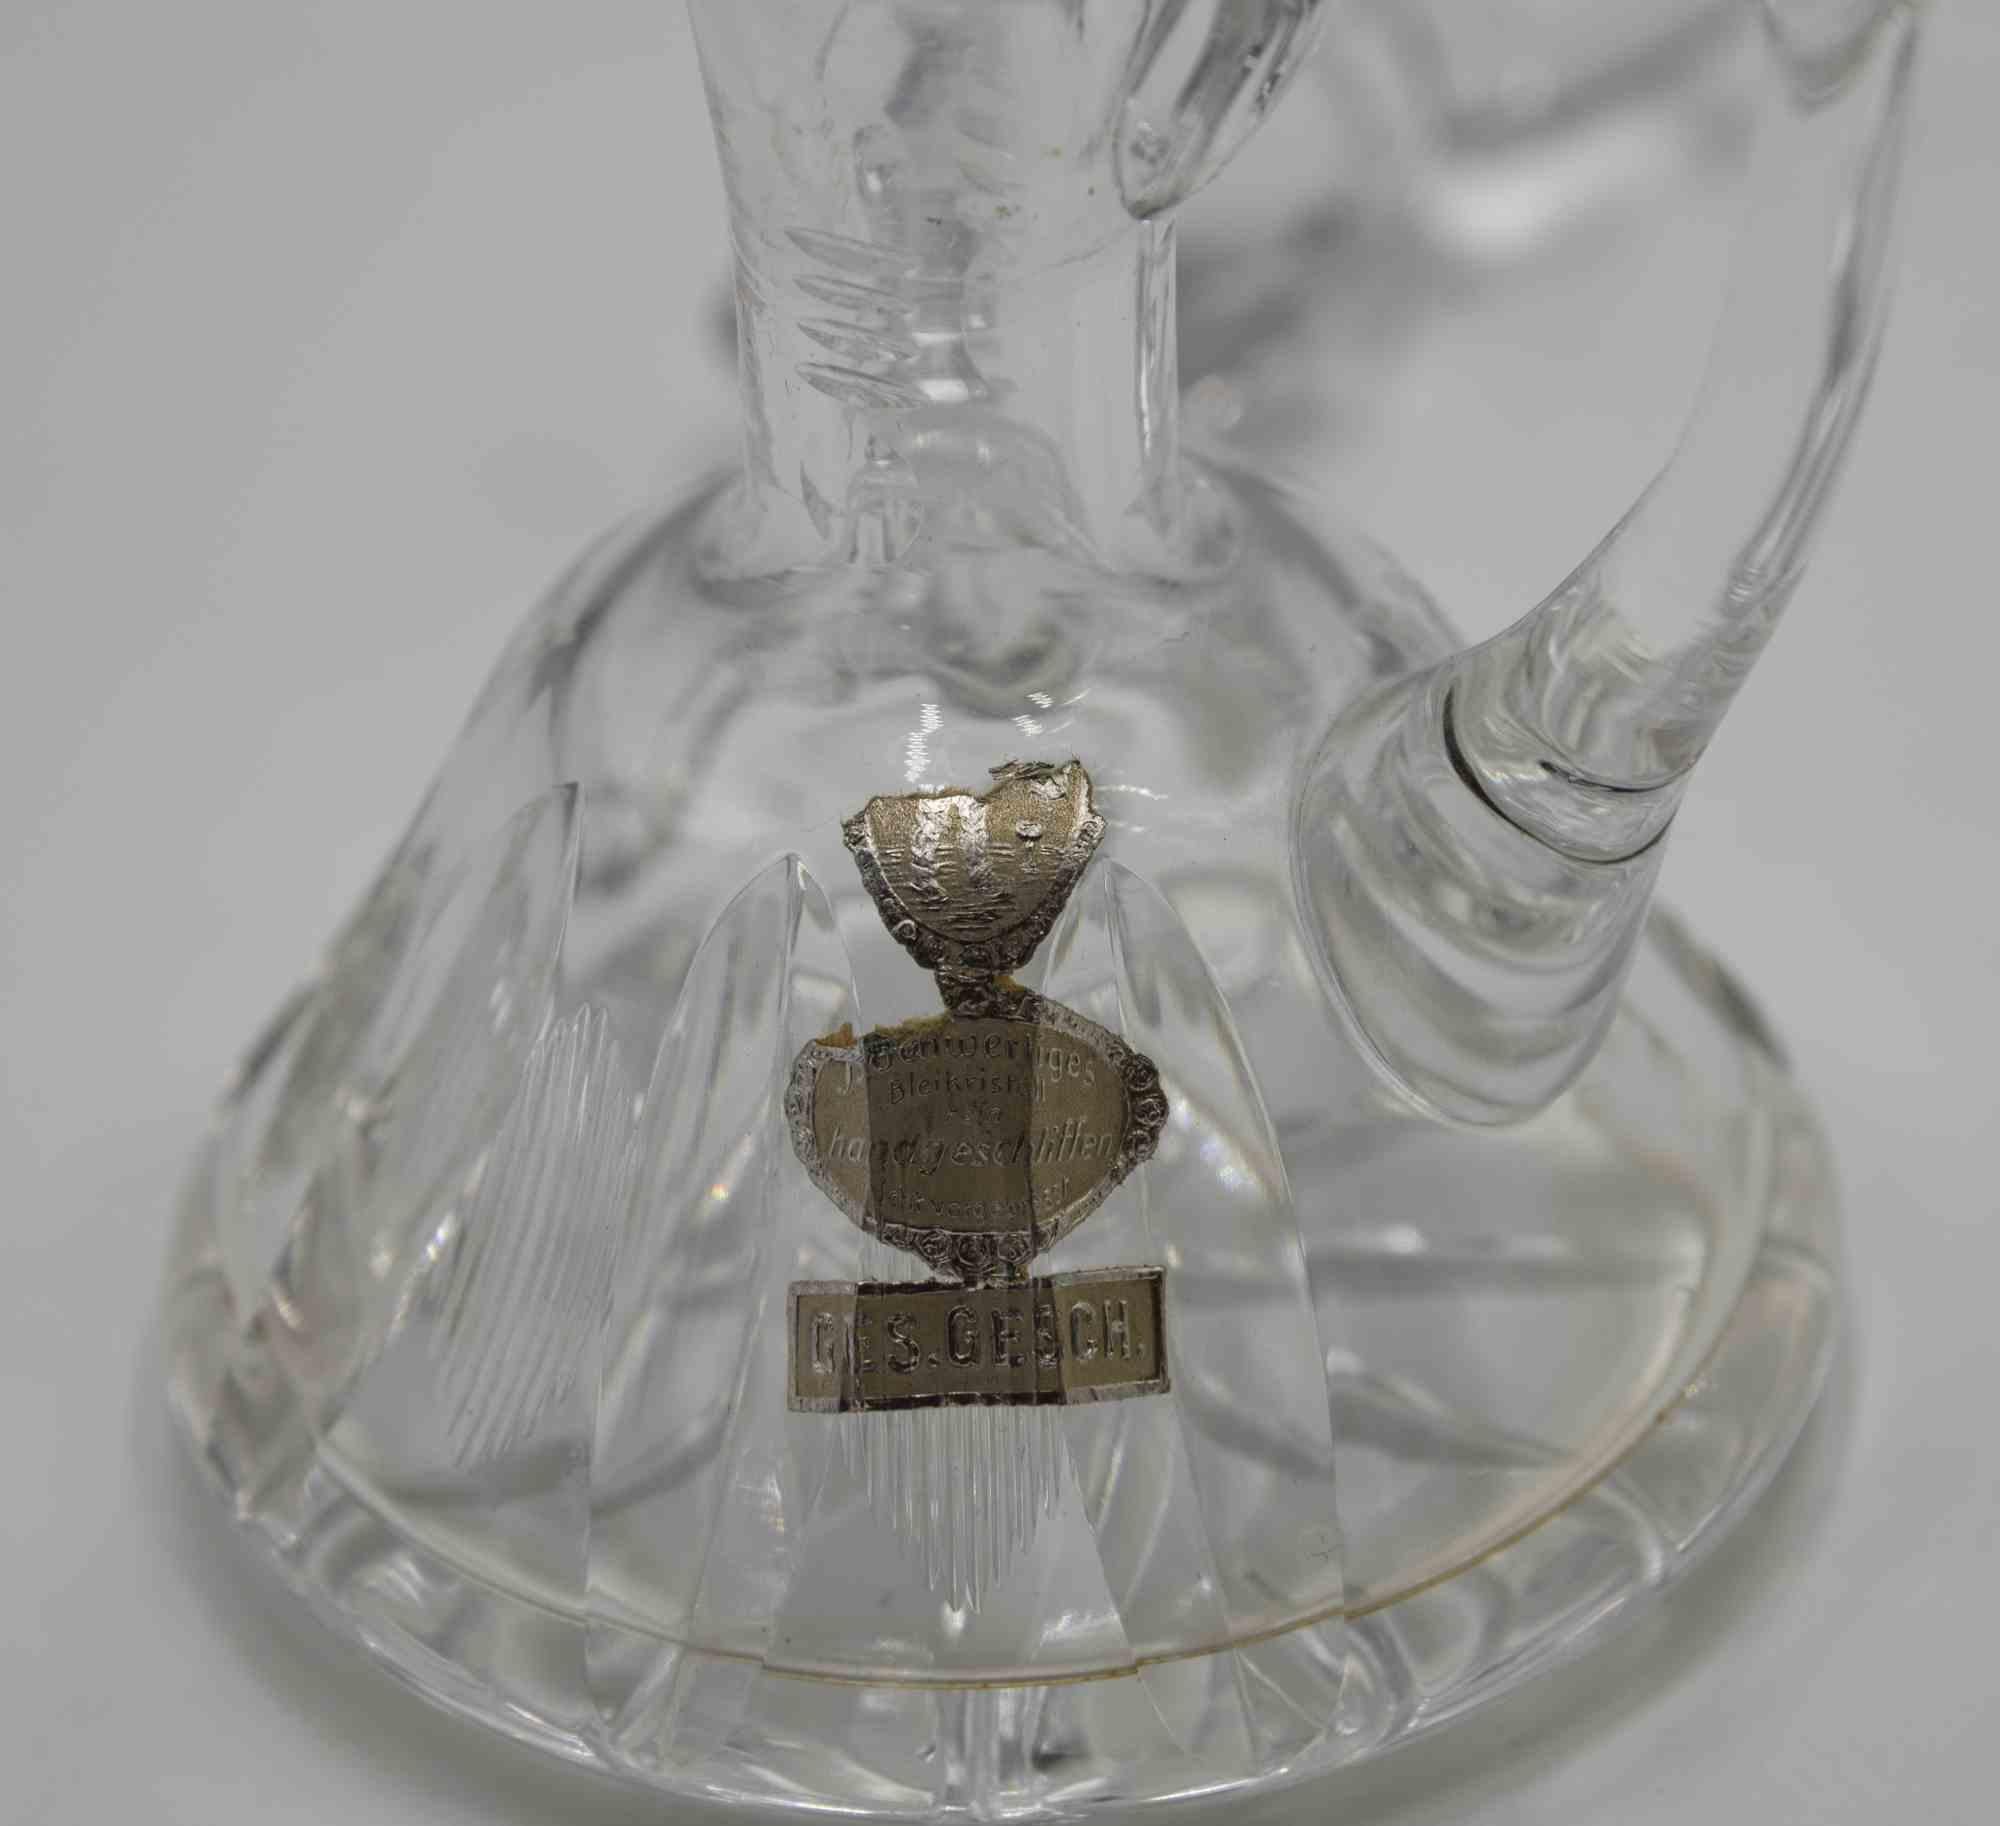 La petite cruche à huile en verre est un objet décoratif réalisé dans les années 1970.

Petite cruche à huile élégante en verre d'art, parfaite pour votre table.

Produit de fabrication allemande, comme indiqué sur l'étiquette.